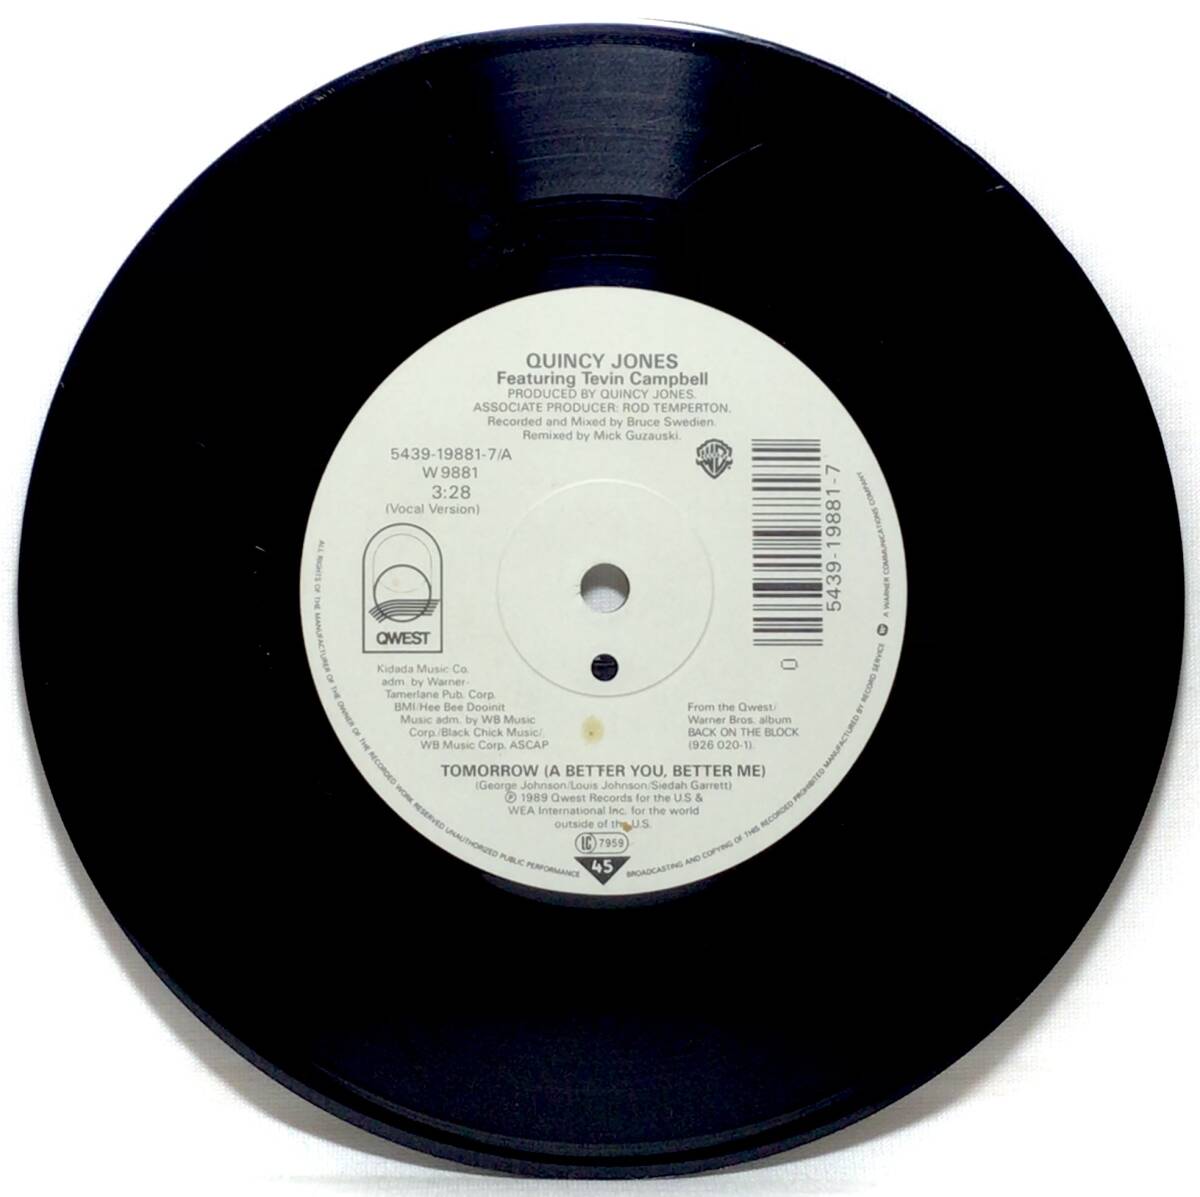 【独7】 QUINCY JONES / TOMORROW feat. TEVIN CAMPBELL (OC元ネタ) 1990 ドイツ盤 7インチレコード EP 45 DJ MURO DIGGIN ICE 97 収録曲_画像3